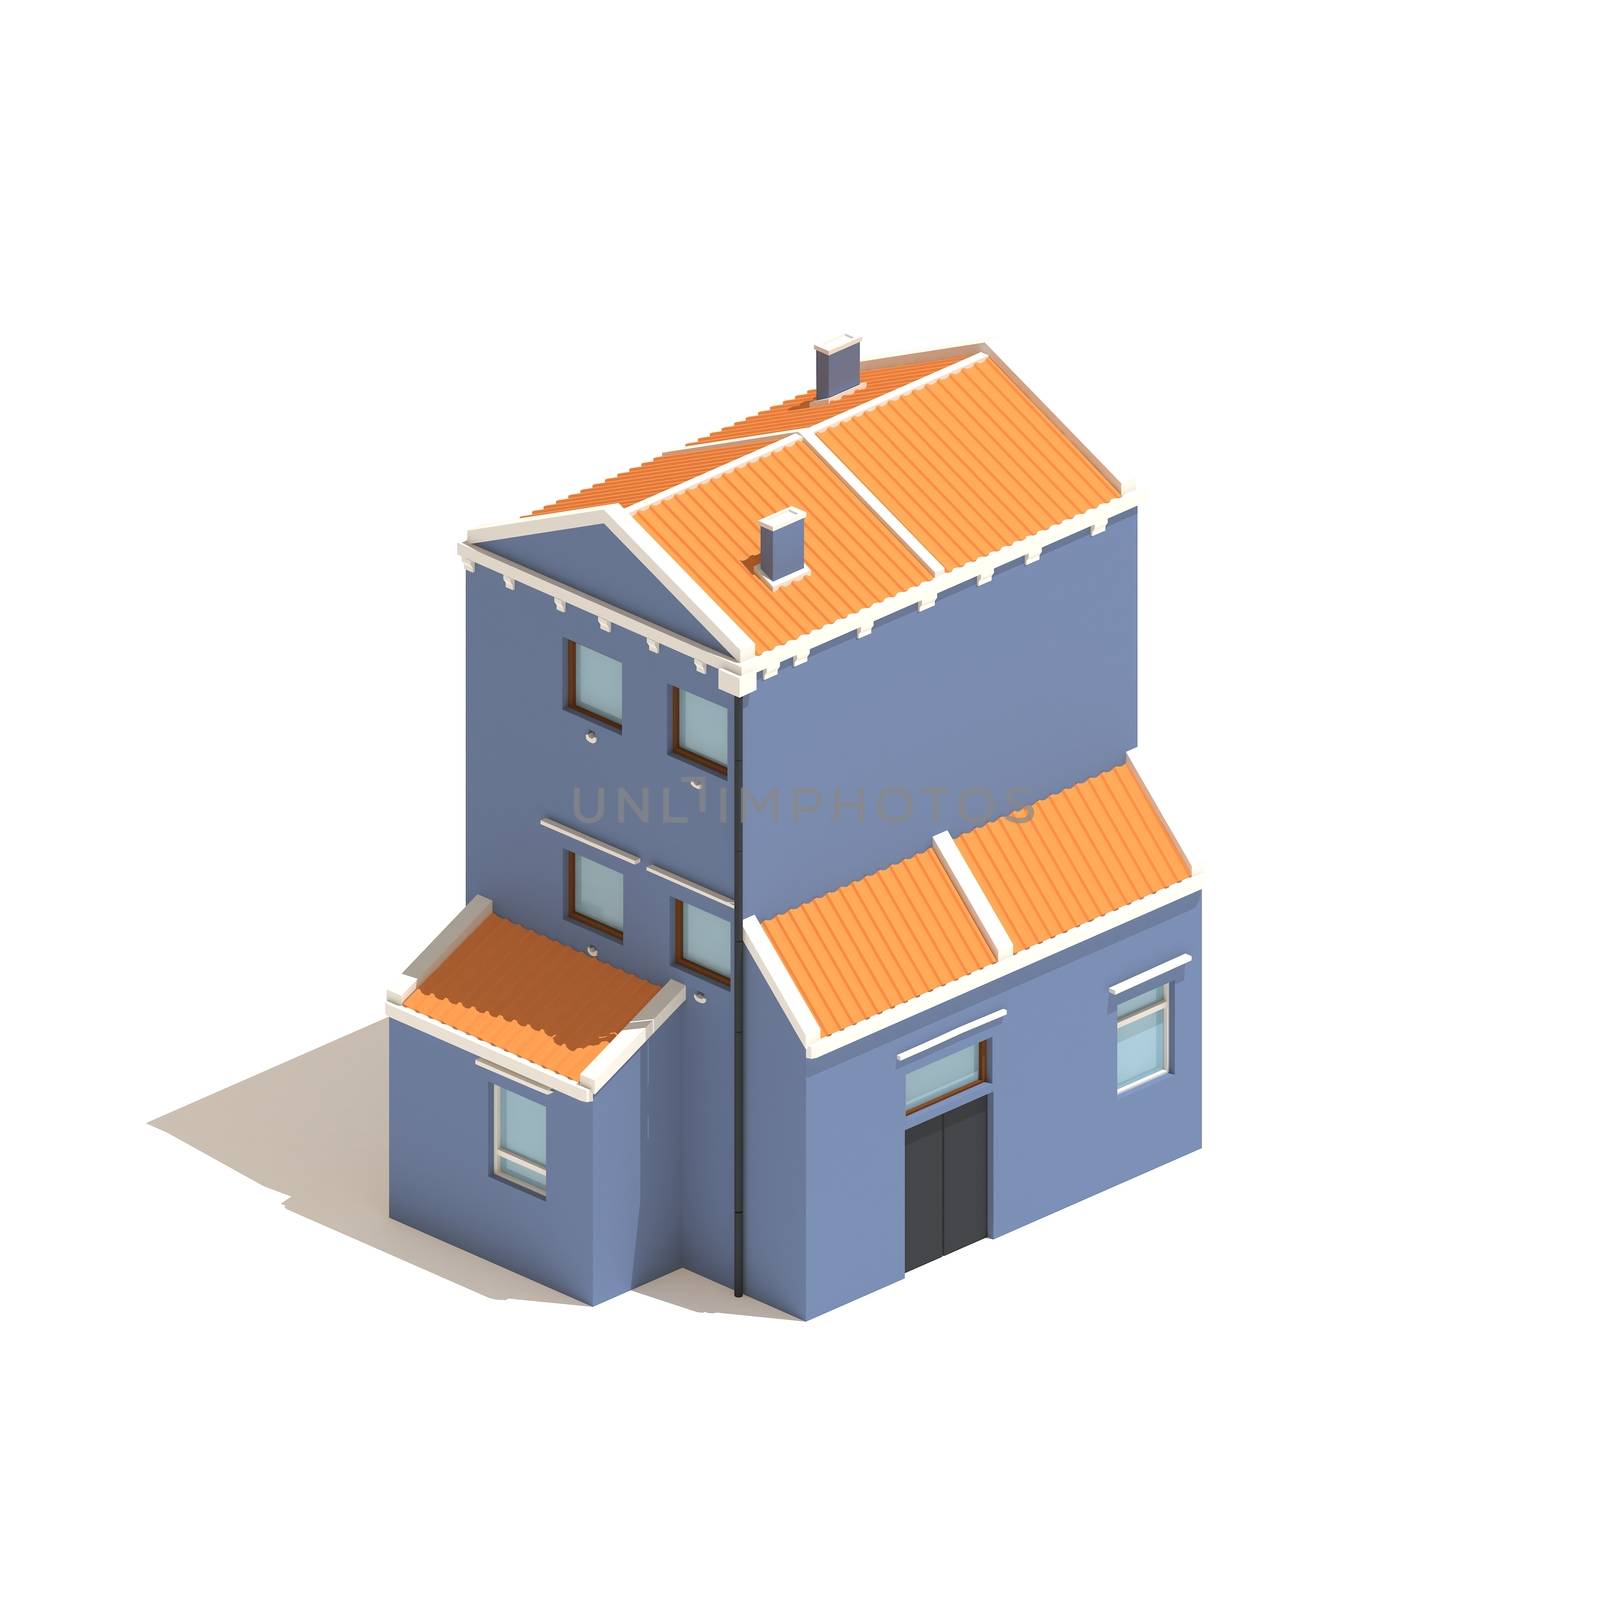 Flat 3d model isometric blue house illustration isolated on white background by ingalinder